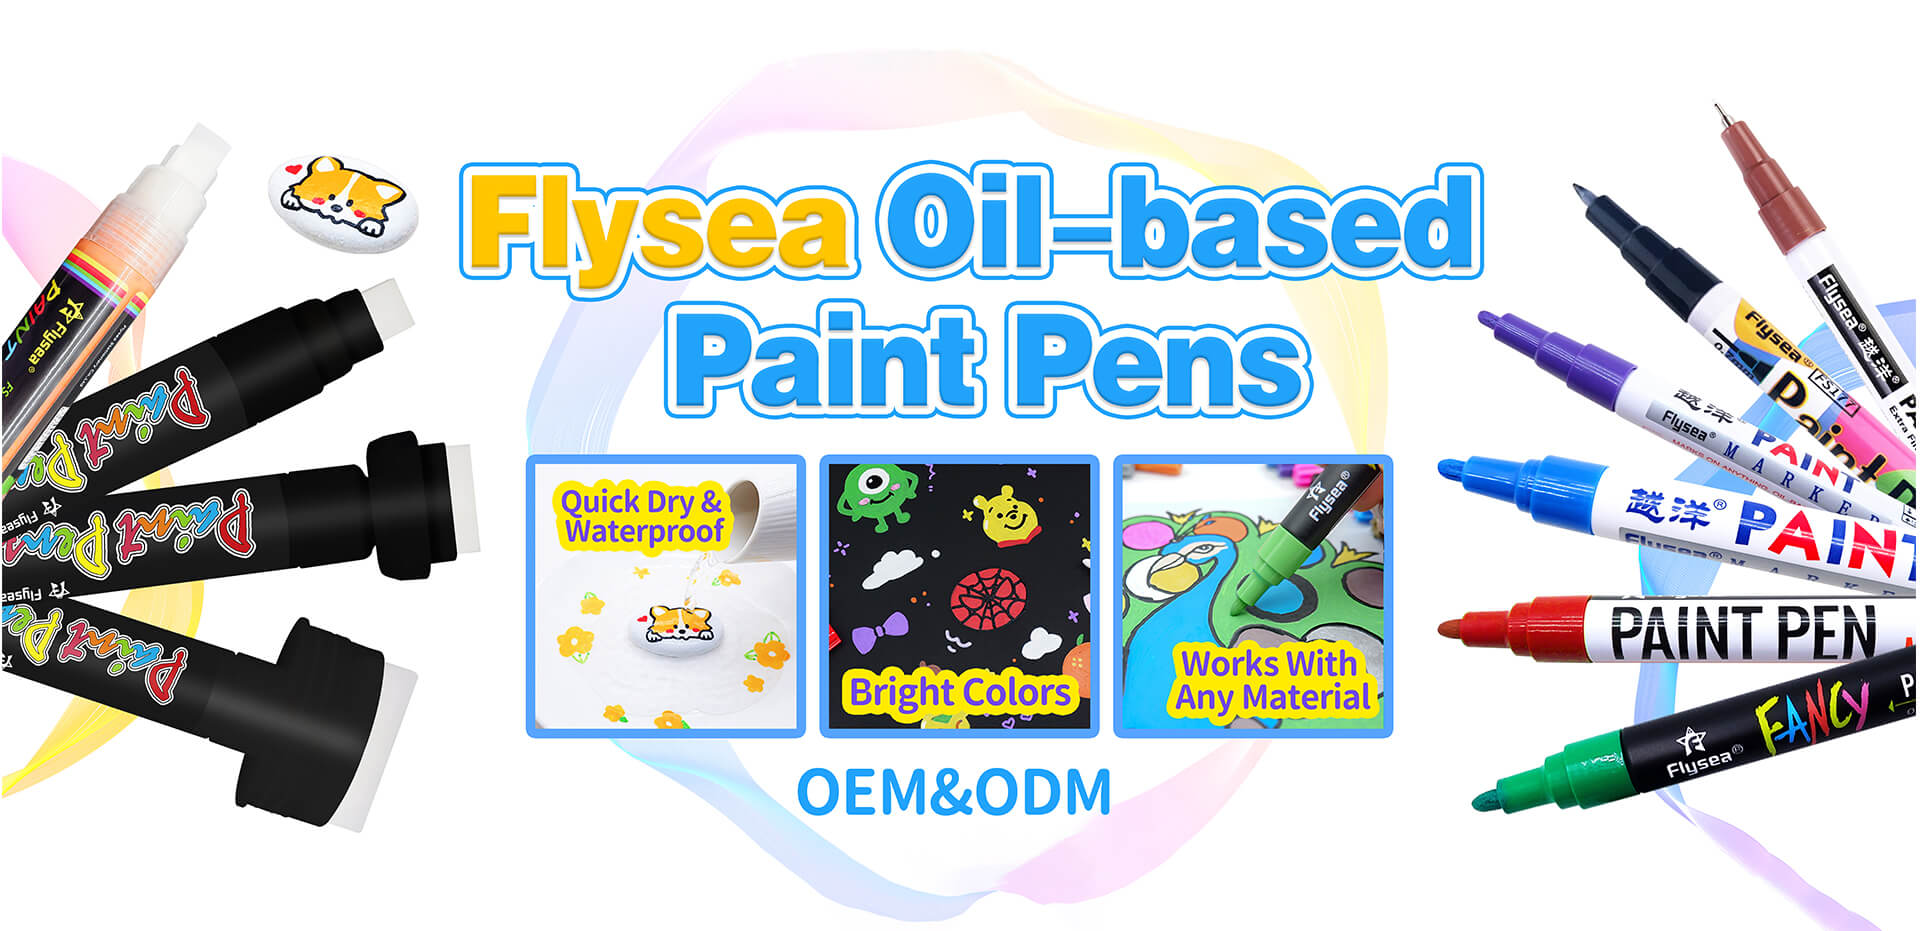 Flysea oil-based Paint Pens